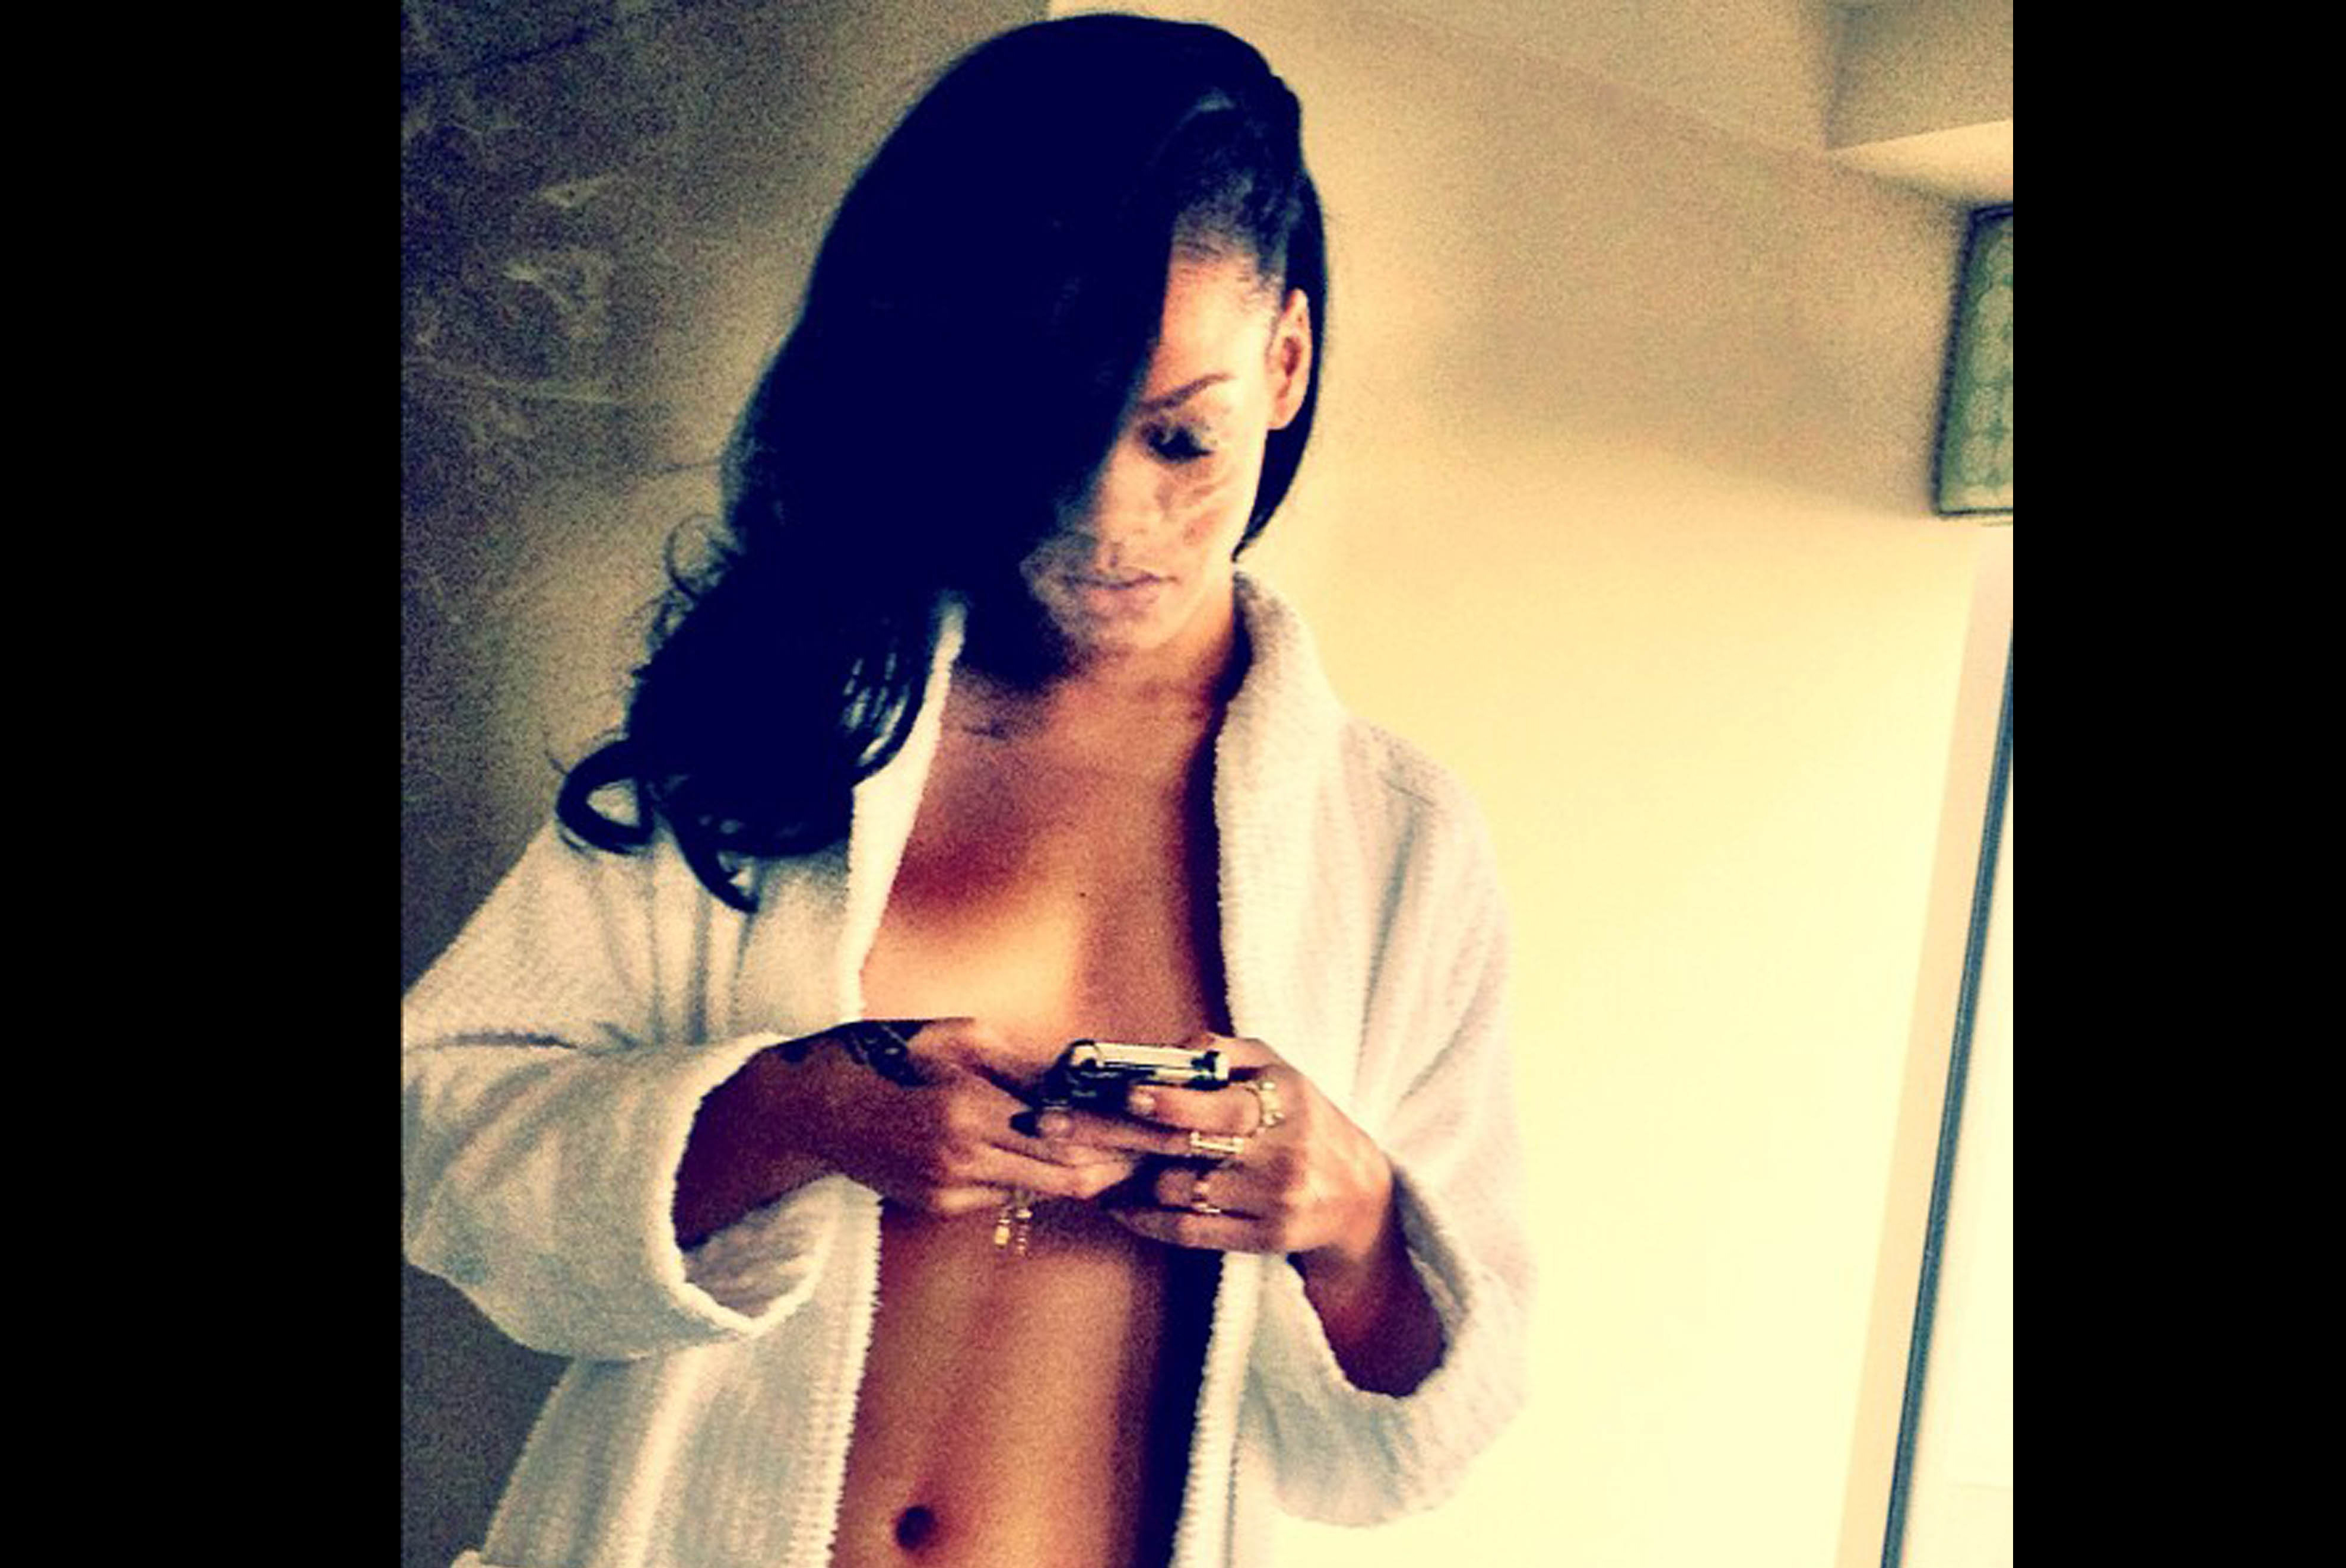 Rihanna twittrar gärna ut lättklädda bilder på sig själv. Här är ett exempel.